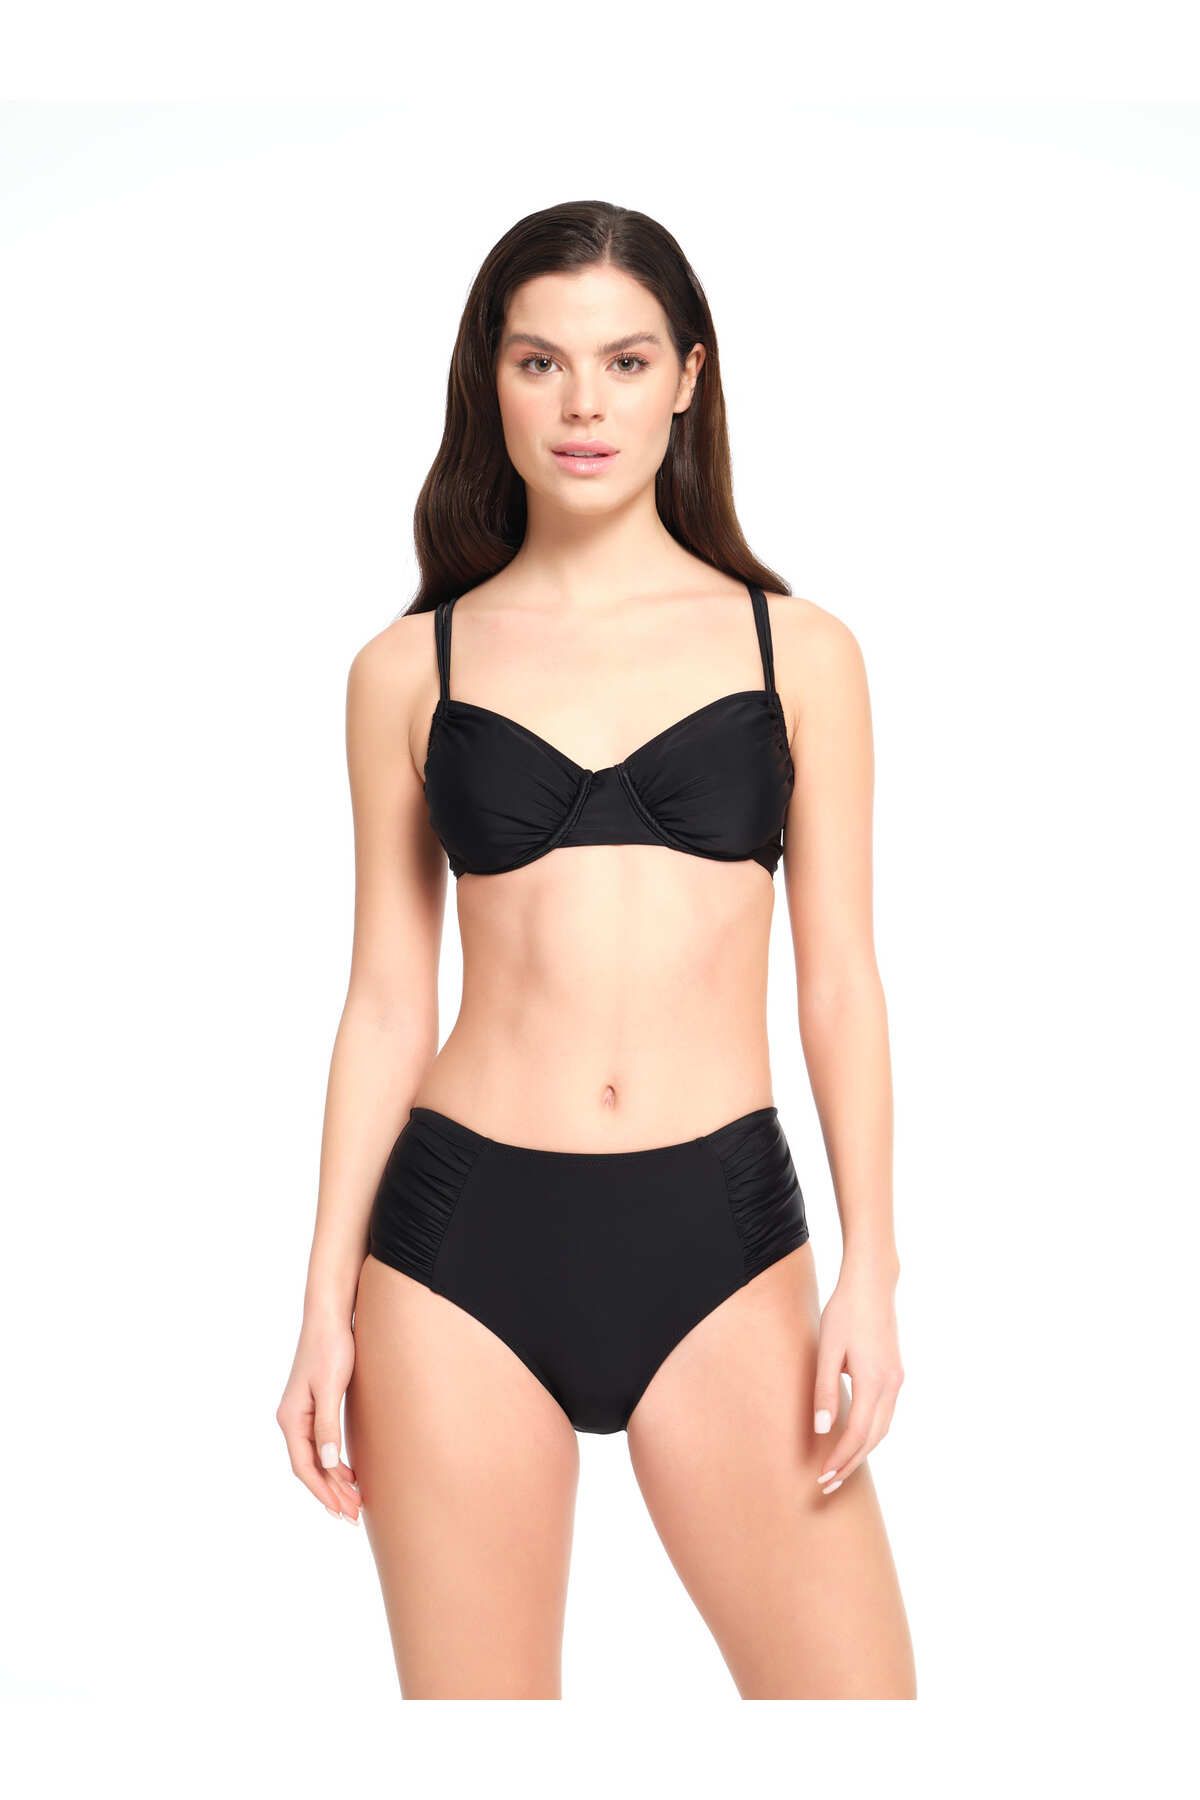 TOO SALTY SWIMWEAR Kadın Siyah Düz Balenli Toparlayıcı Yüksek Bel Bikini Takımı 23s102st